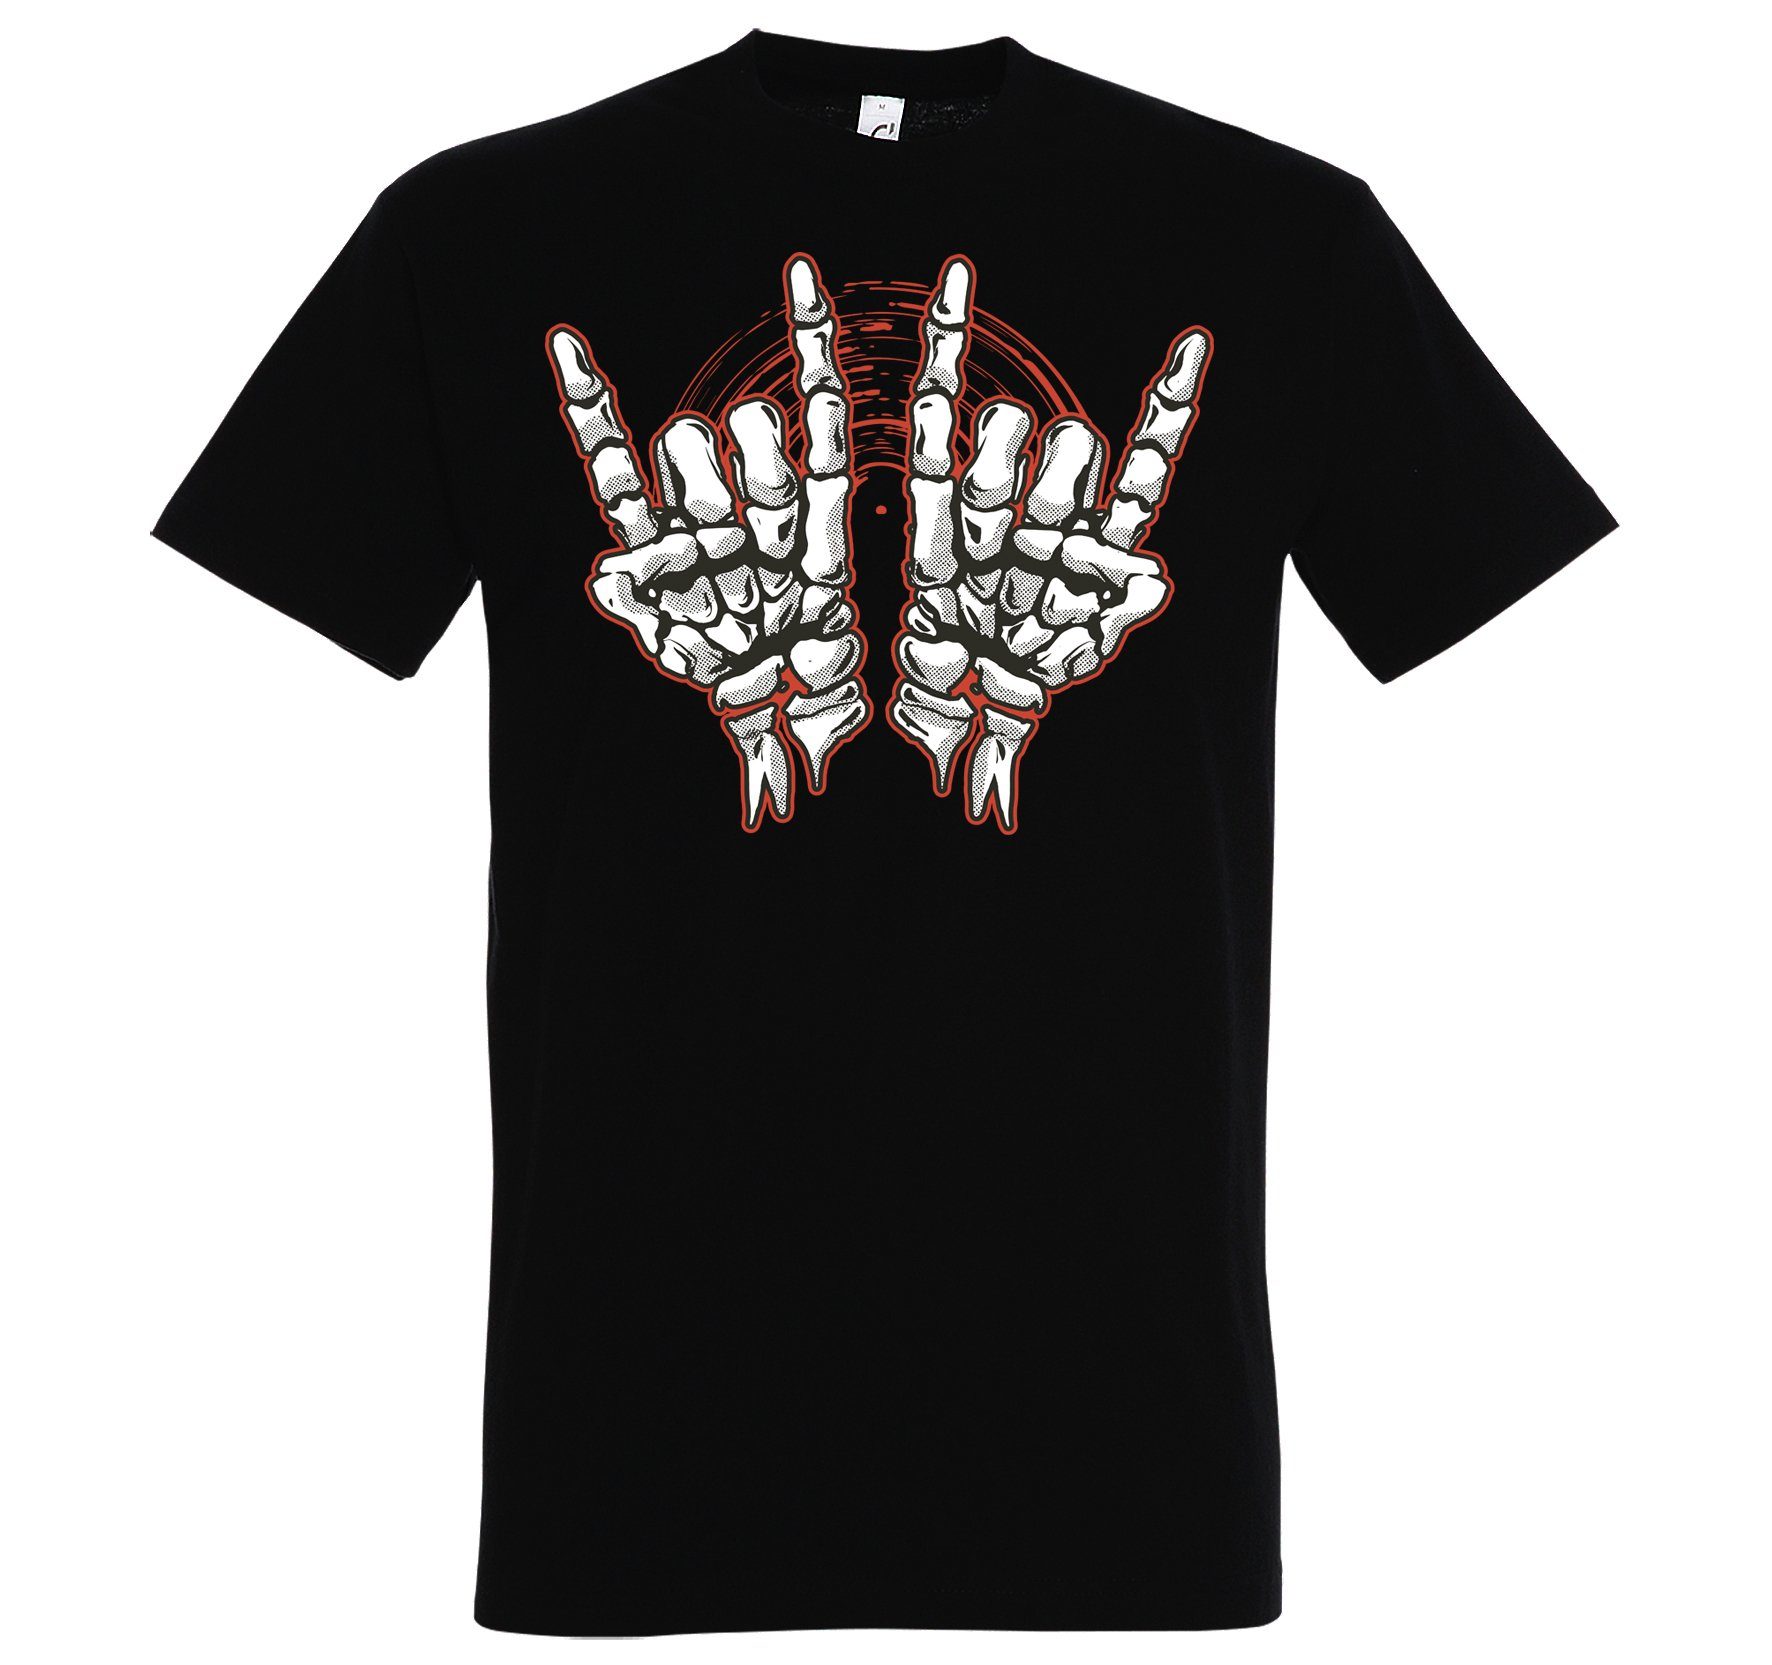 Horror im Youth T-Shirt Herren Rock'n'Roll Fun-Look Frontdruck Designz mit Skelett Hand Schwarz Trendigem T-Shirt